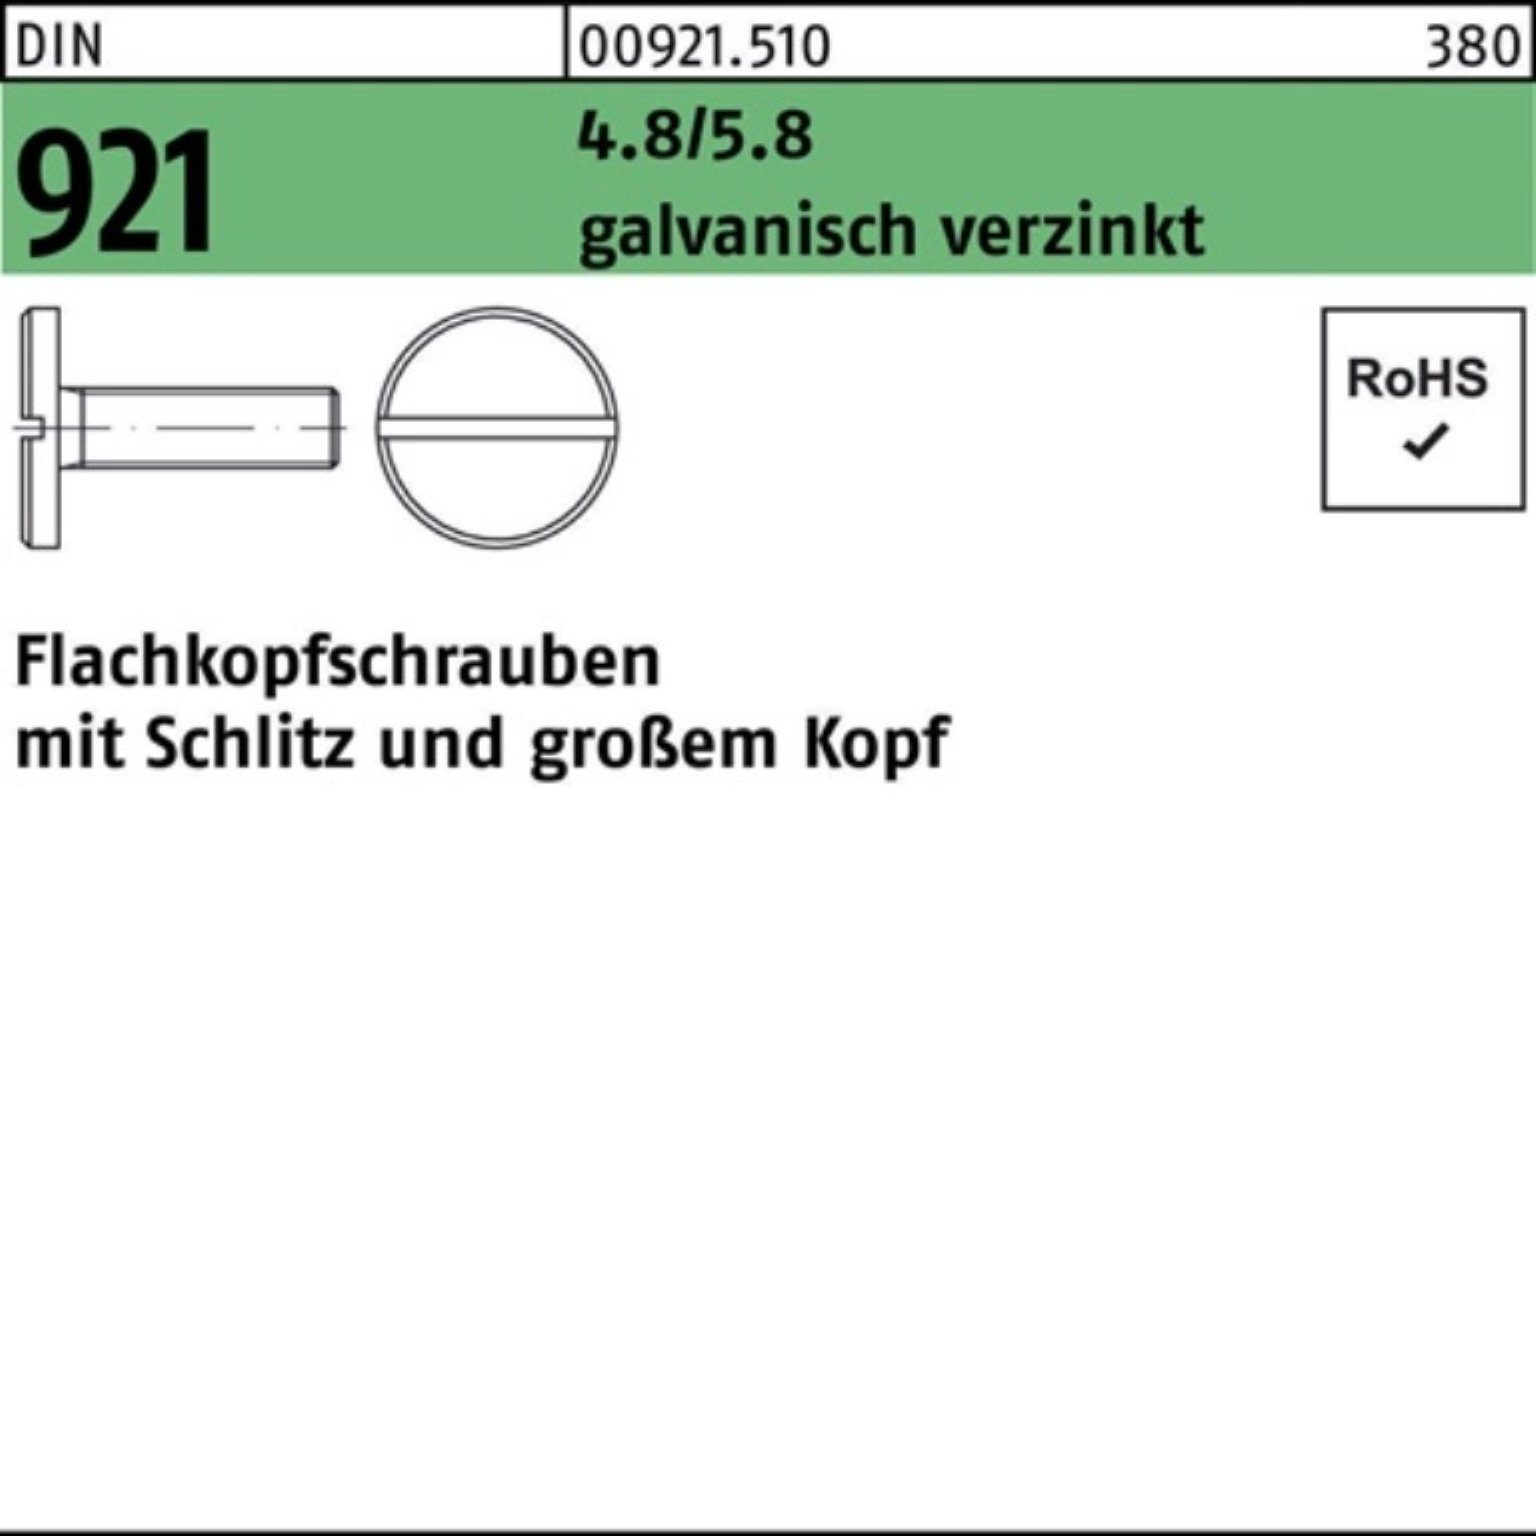 M4x Reyher Flachkopfschraube Schraube 100er 921 Pack galv.verz. DIN 4.8/5.8 8 Schlitz